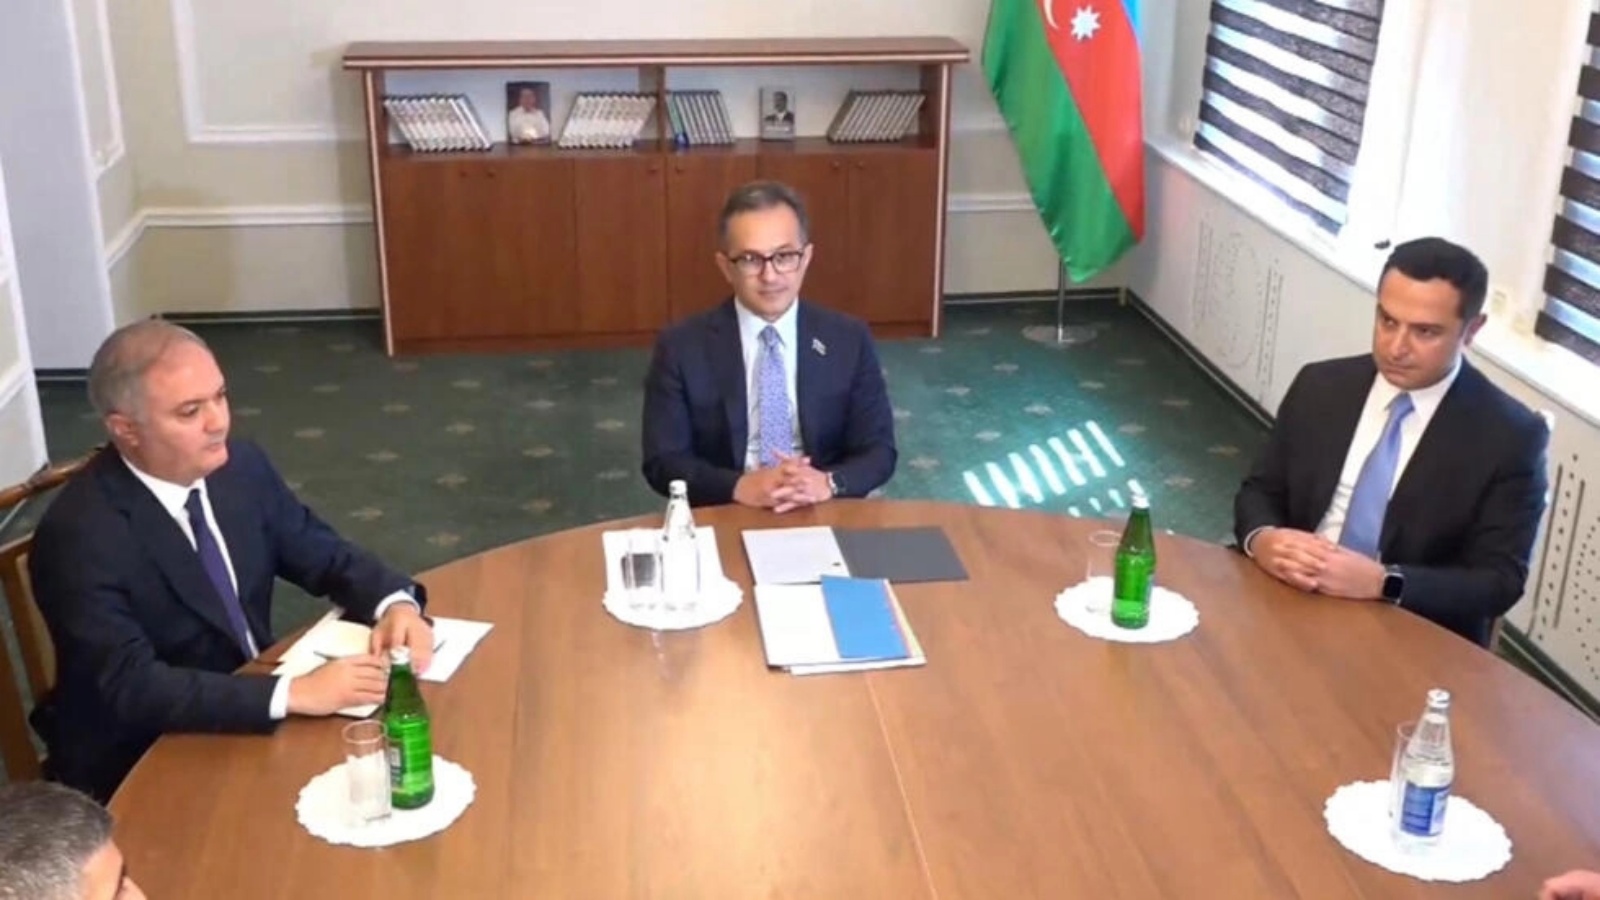 في هذا الفيديو المأخوذ من لقطات AFPTV الوفد الأذربيجاني يحضر محادثات مع وفد كاراباخ في بلدة يفلاخ الأذربيجانية في 21 سبتمبر 2023